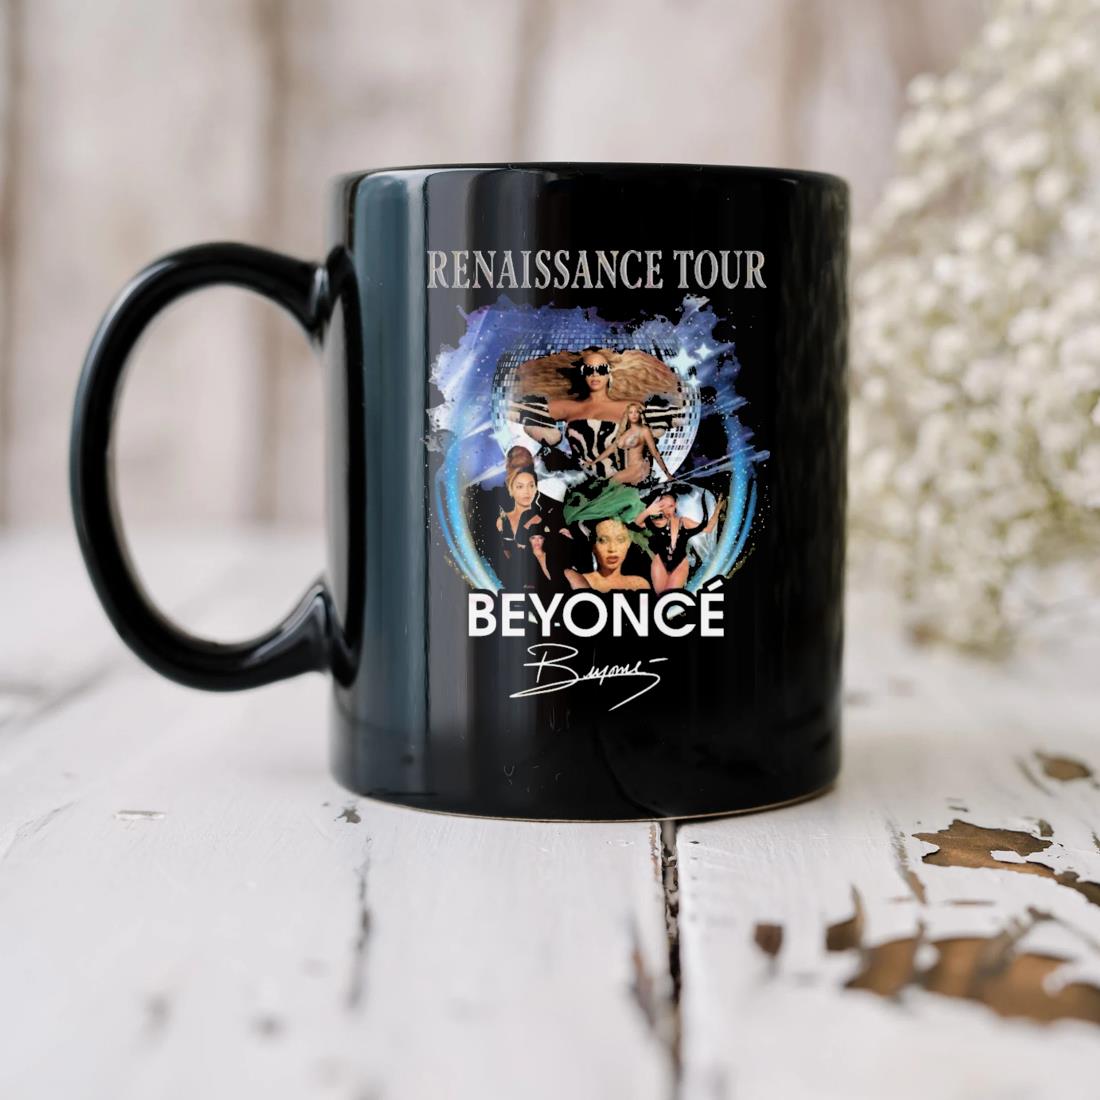 Renaissance Tour Beyonce Signature Mug